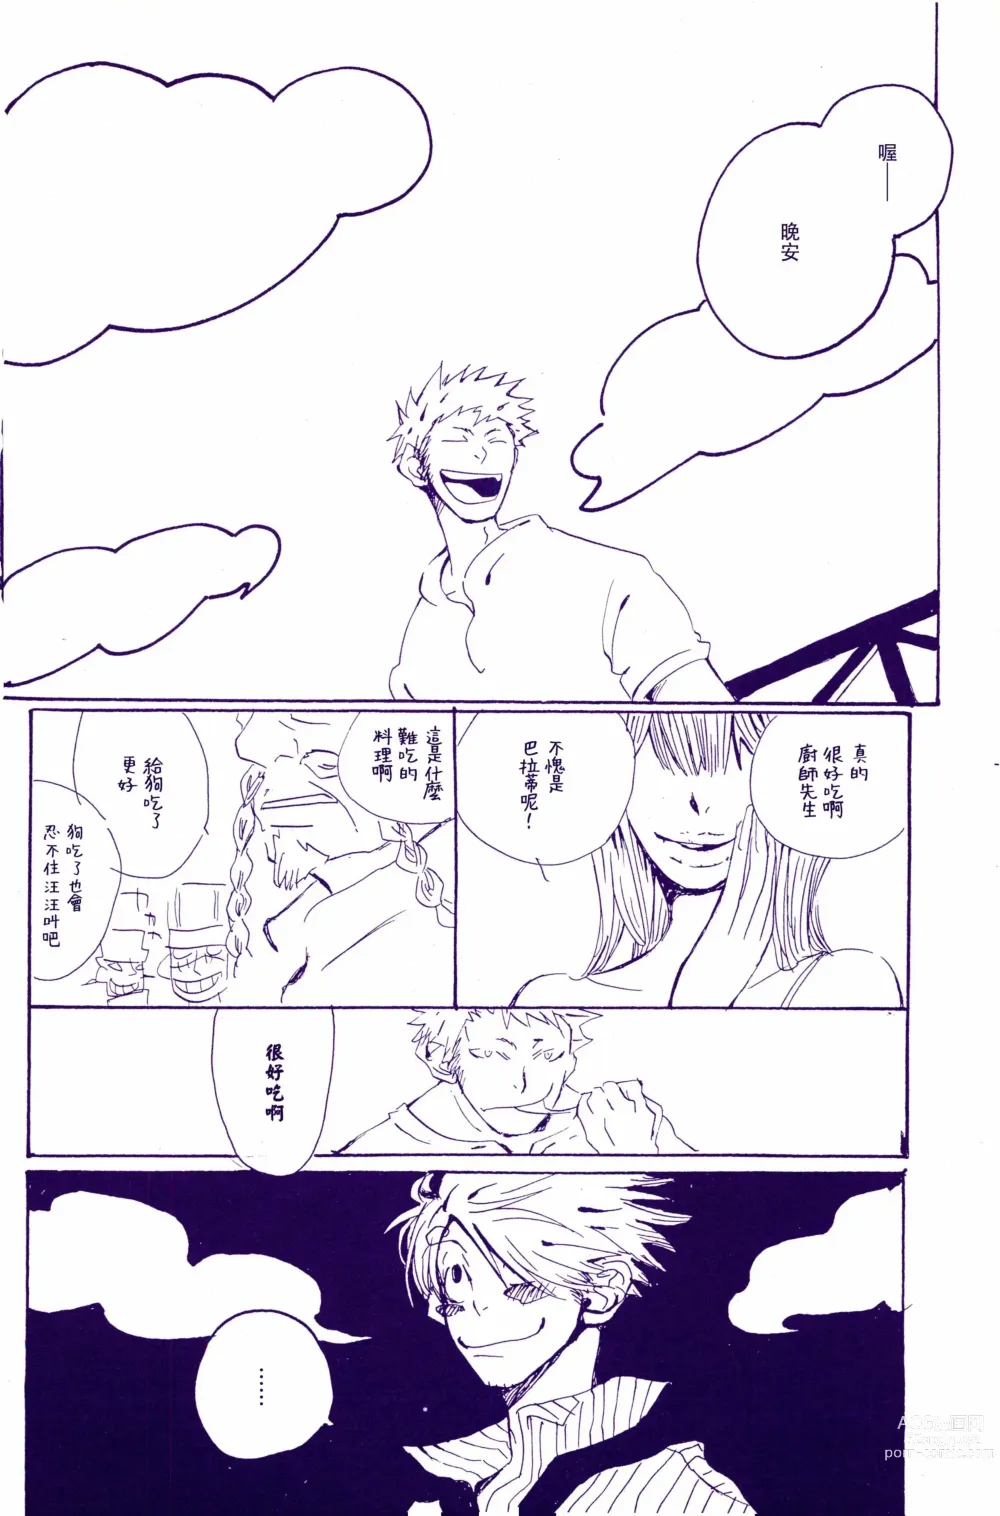 Page 11 of doujinshi 在暴风雨的夜晚 1